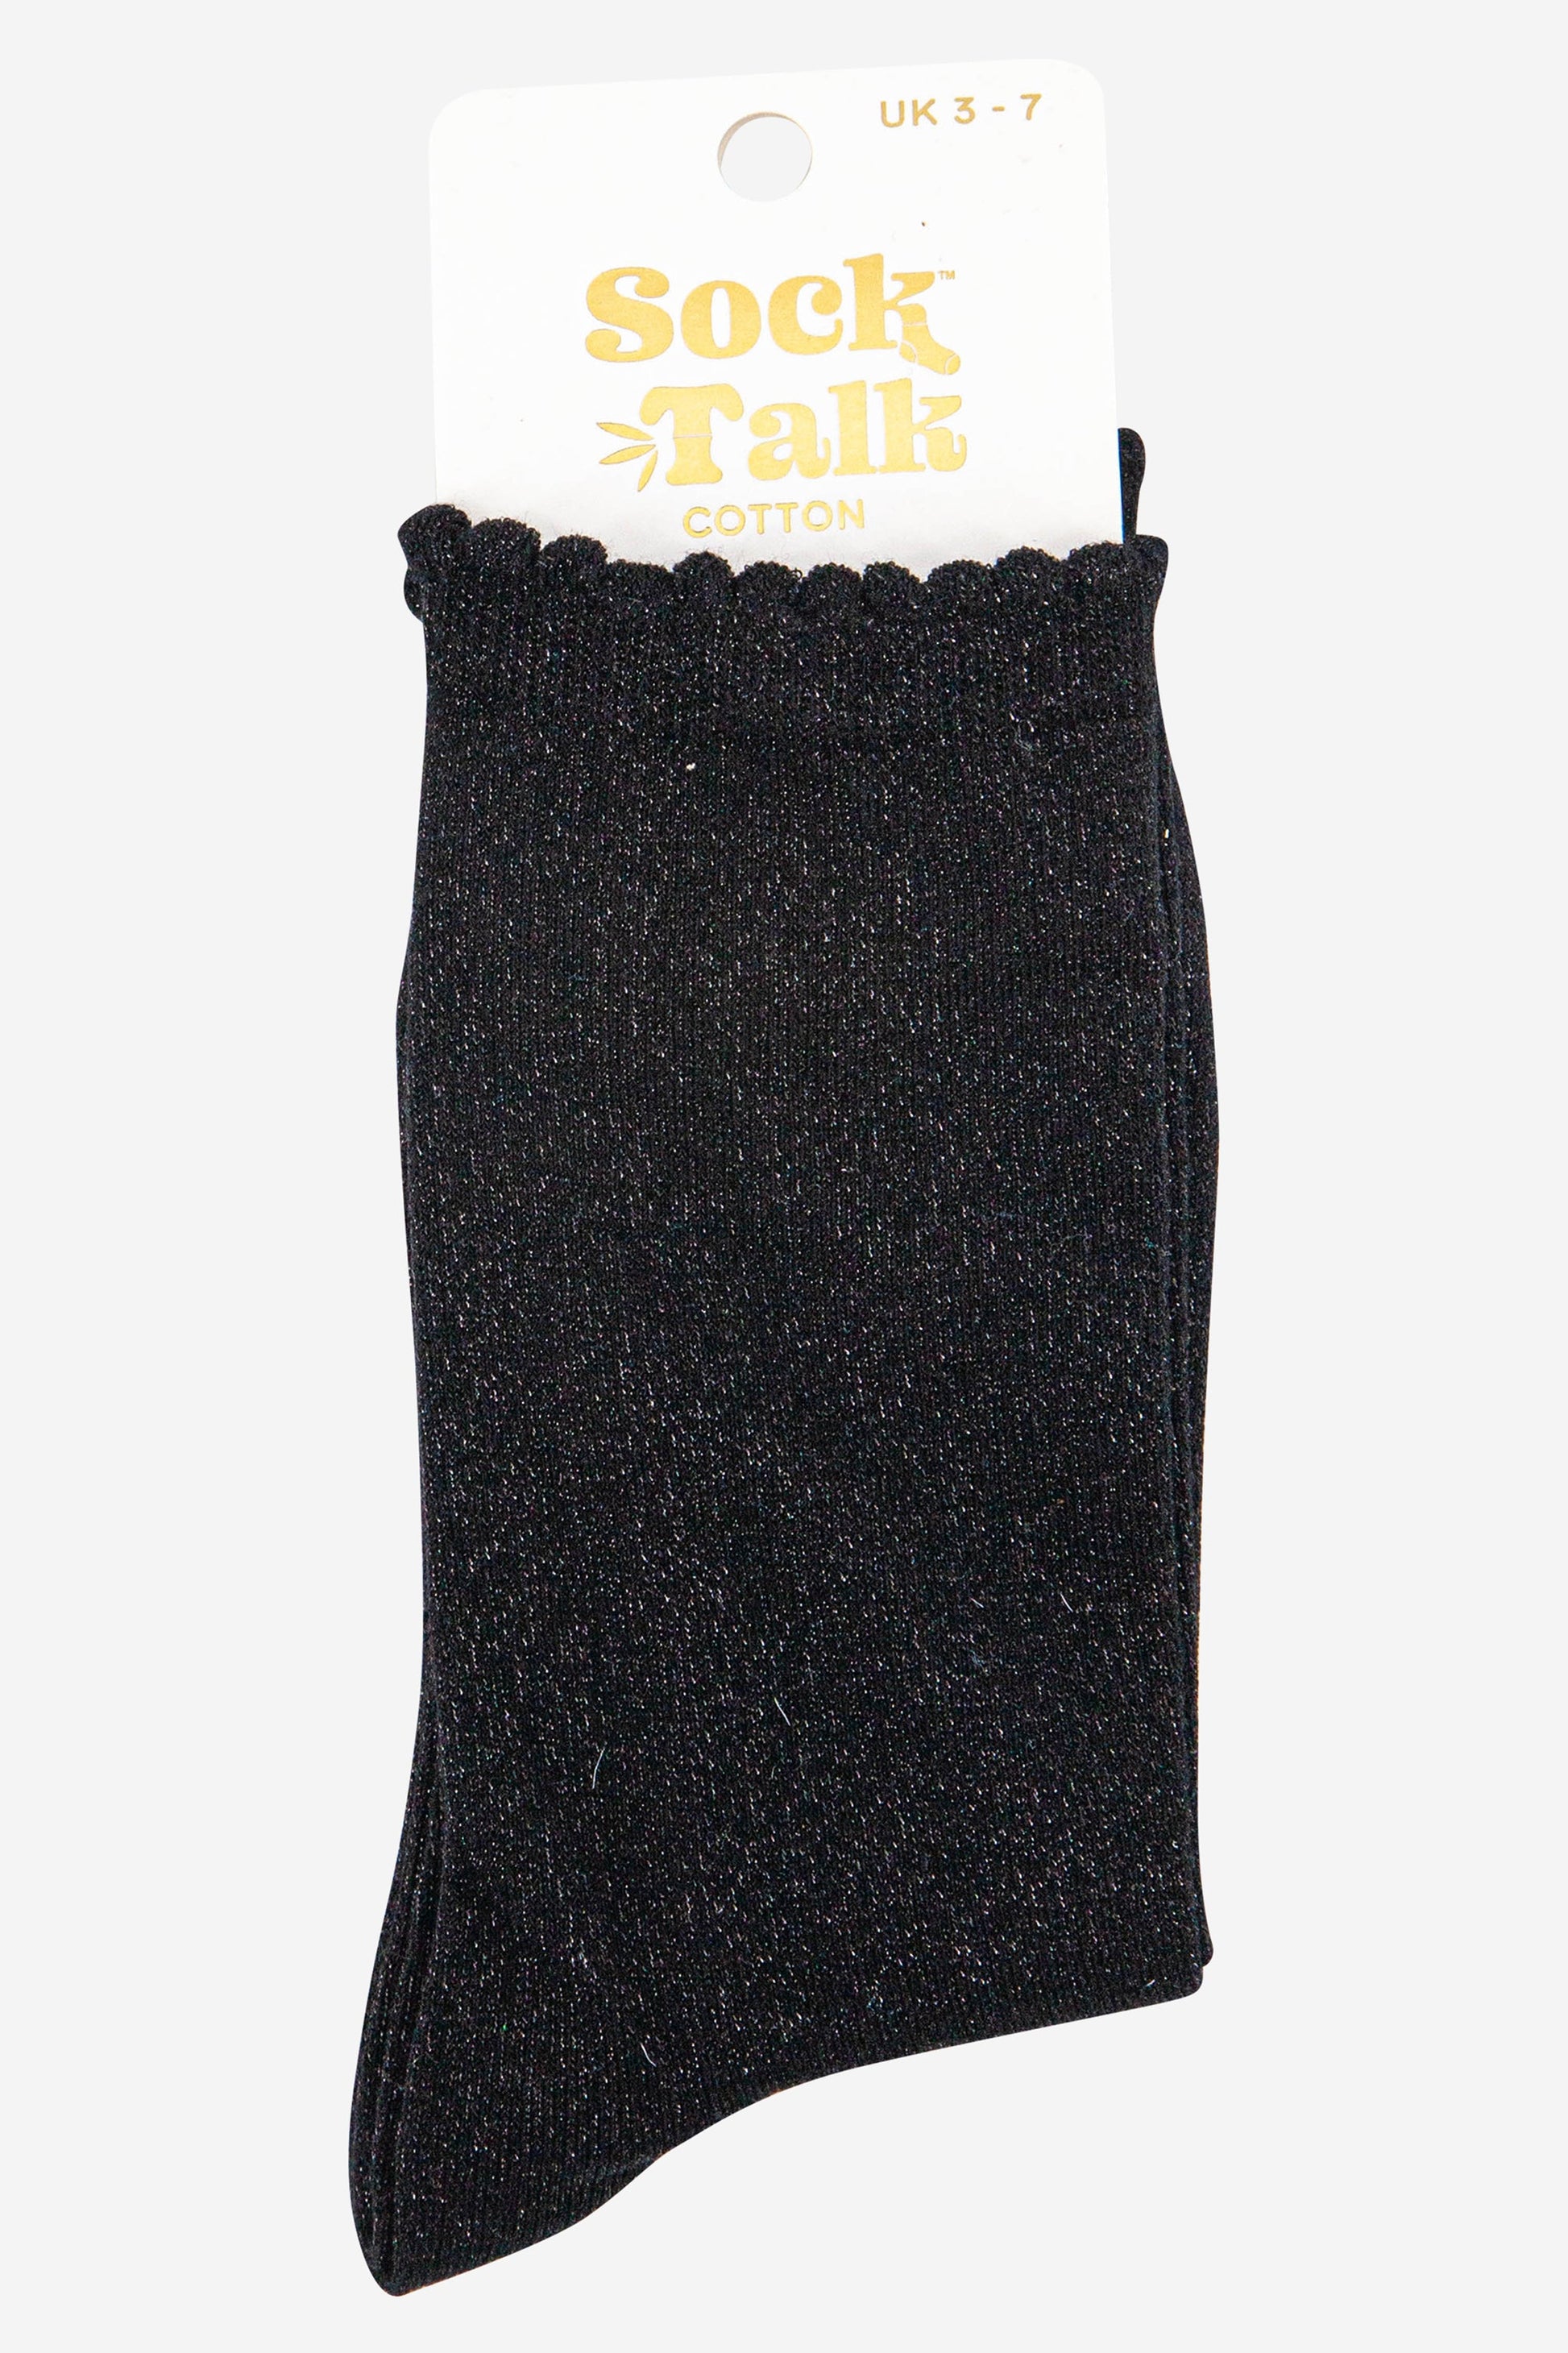 black scalloped cuff cotton glitter socks uk size 3-7